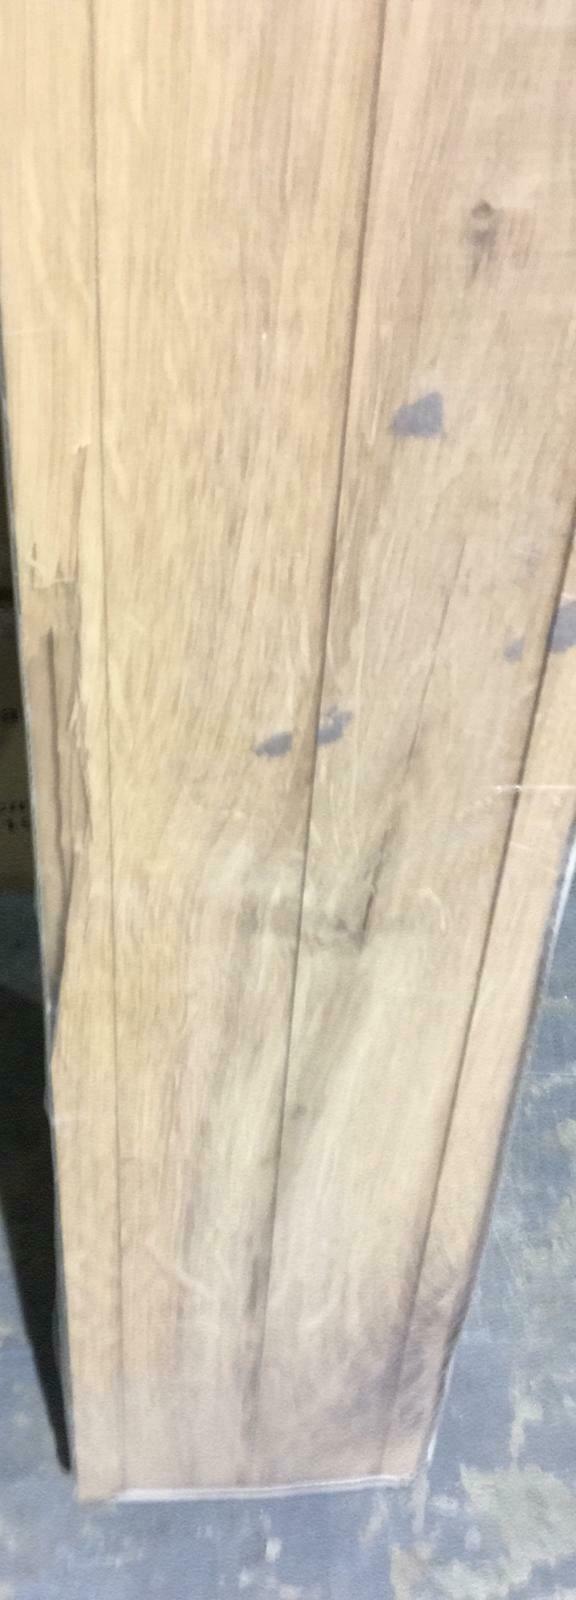 4 Packs of GoodHome Koping Natural Oak Solid wood flooring, -7434